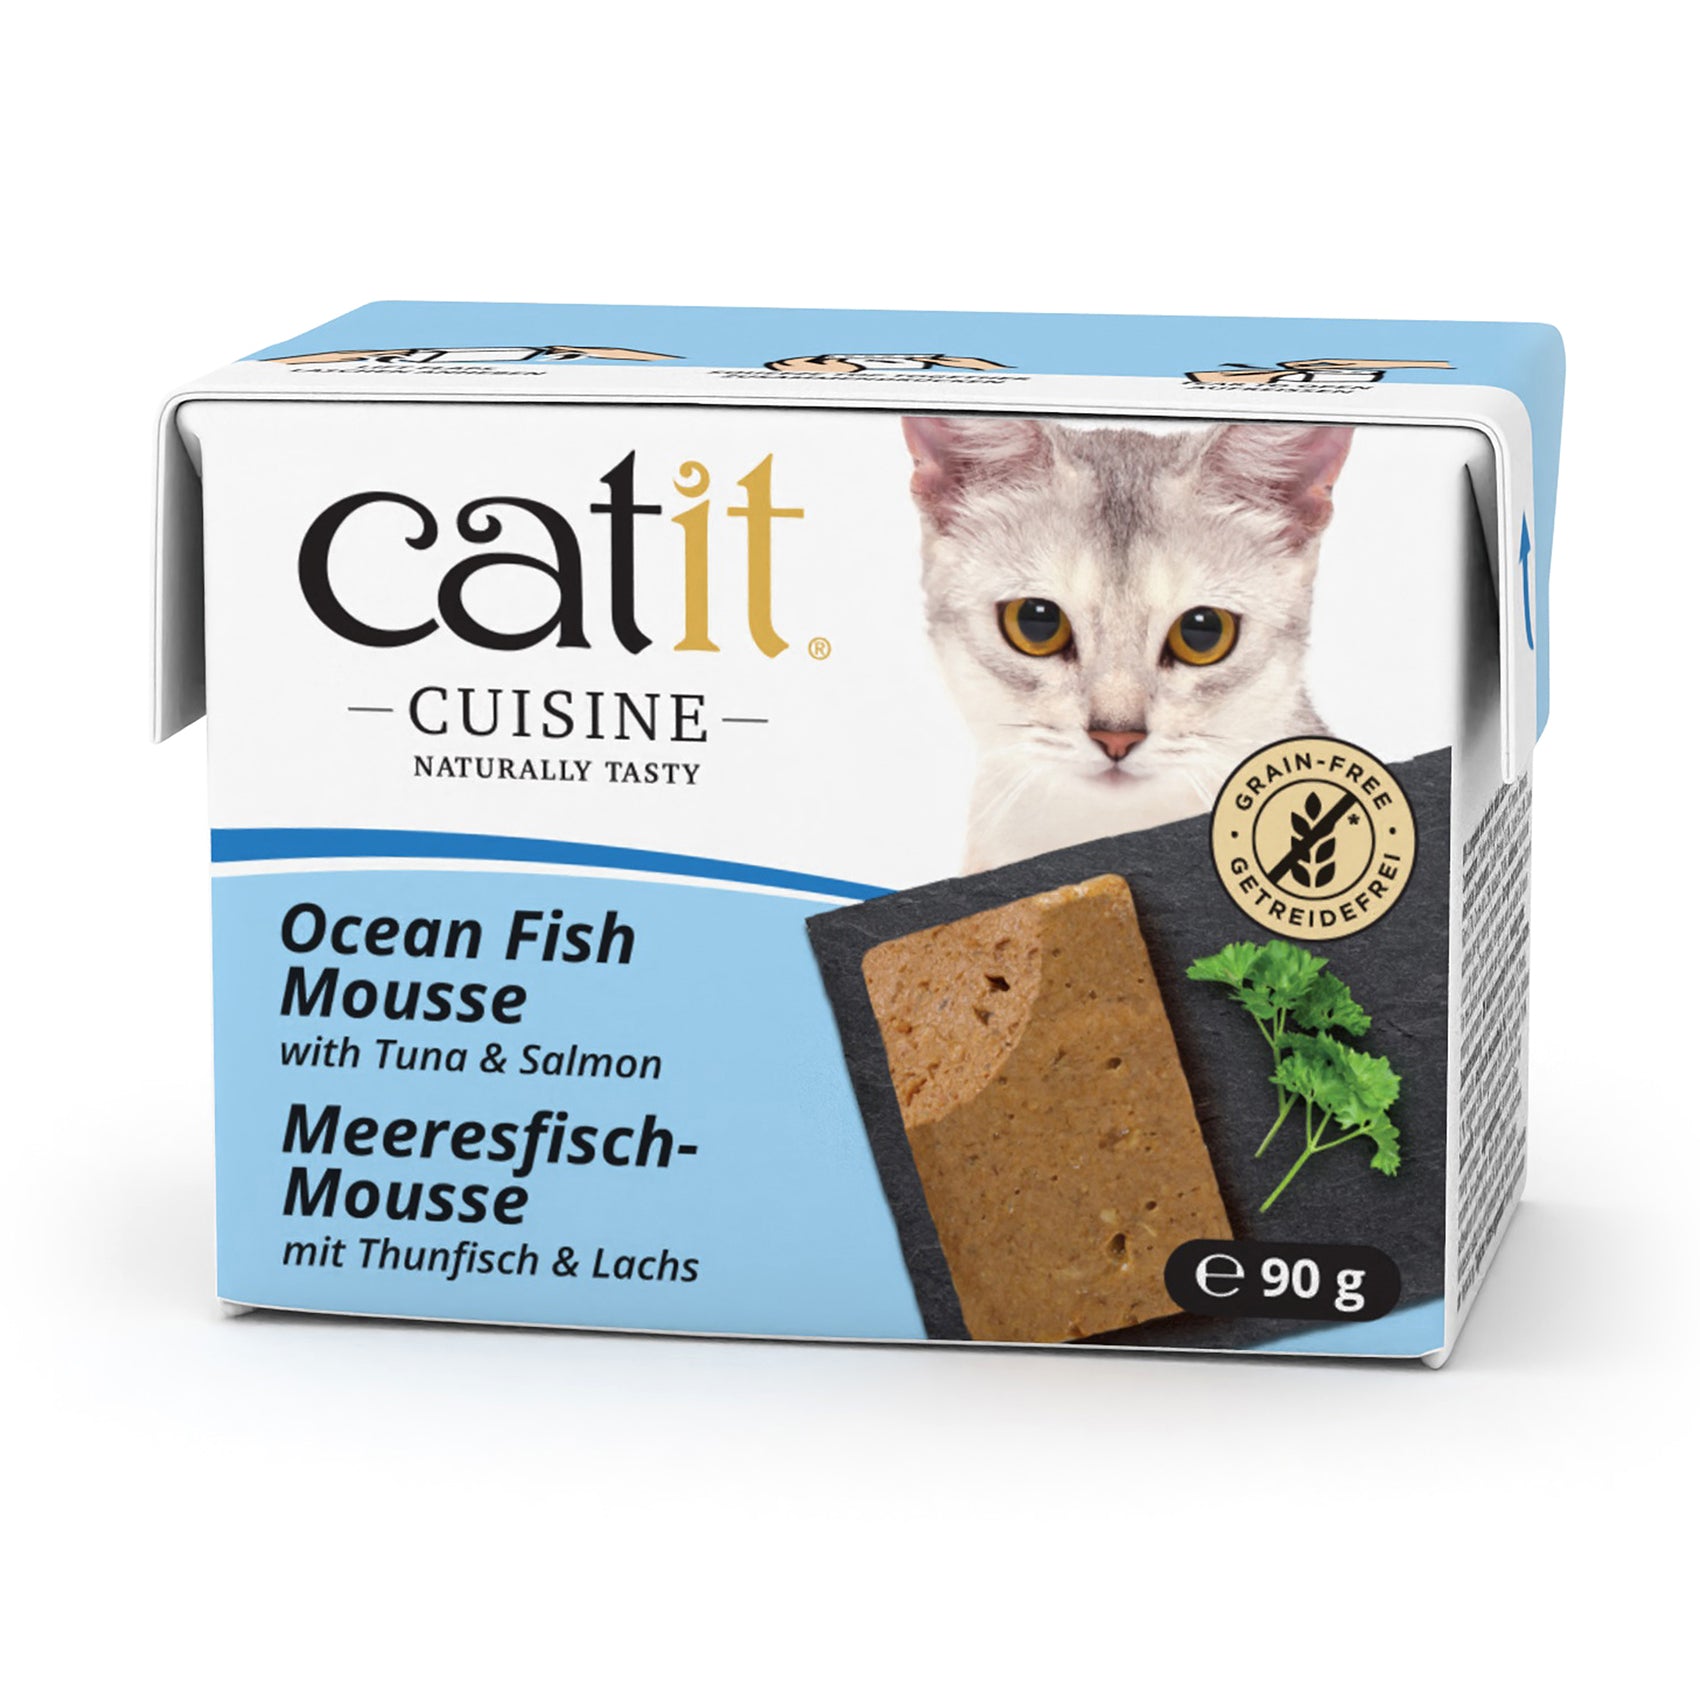 Catit Cuisine Cat Wet Food Ocean Fish Mousse 90g